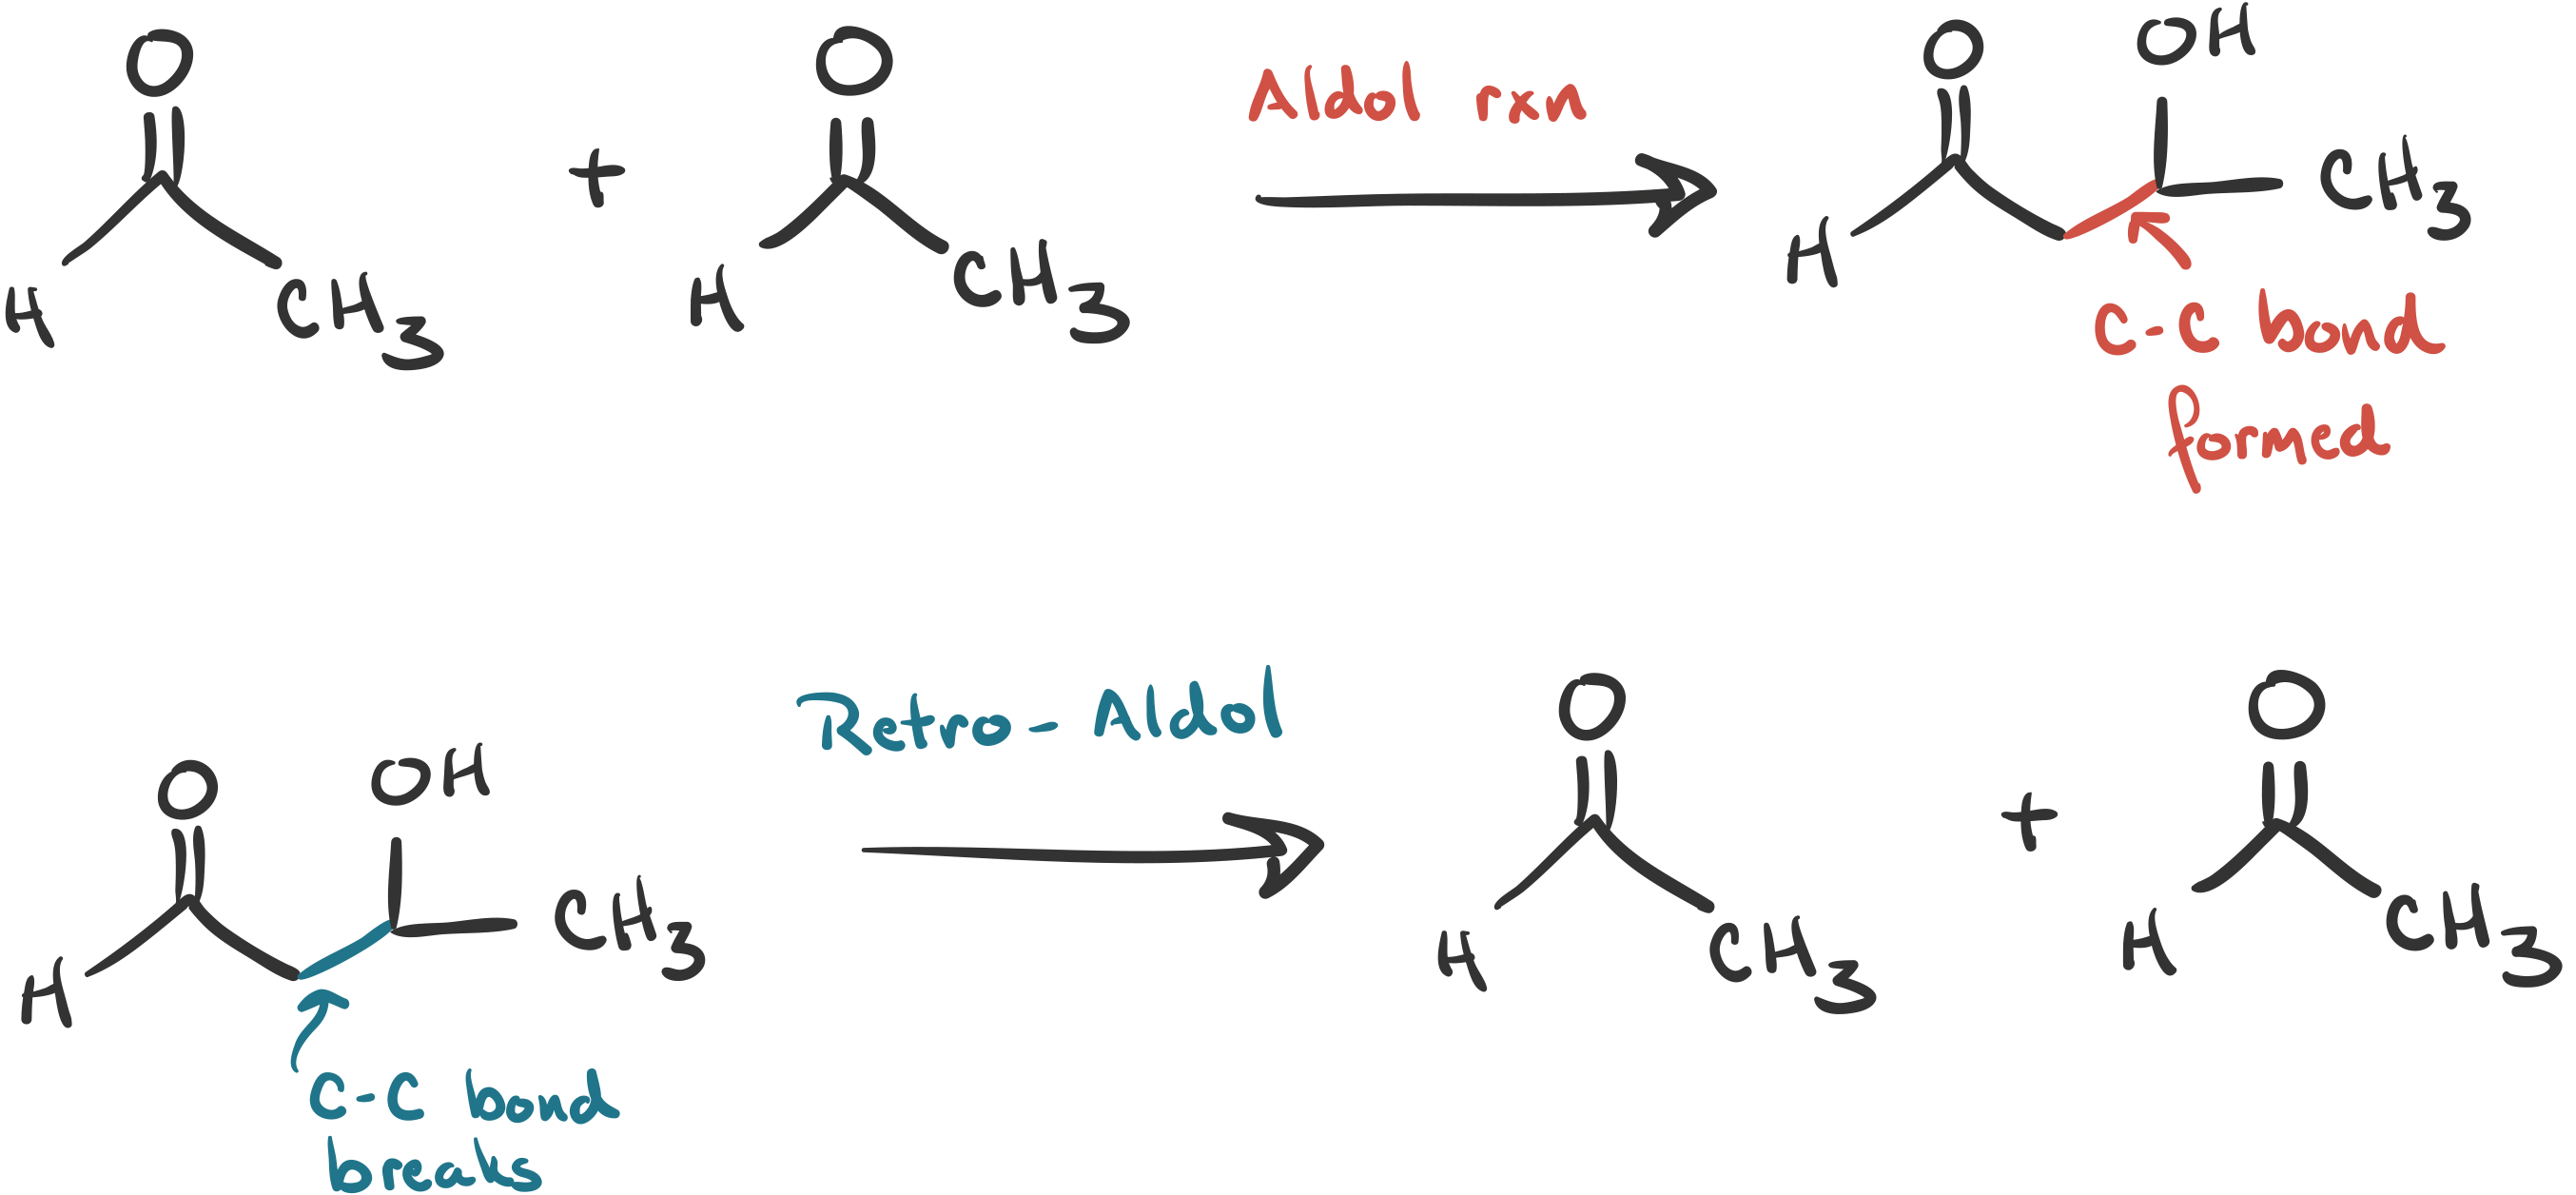 lada-schluchzen-blauwal-retro-aldol-condensation-mechanism-uns-selbst